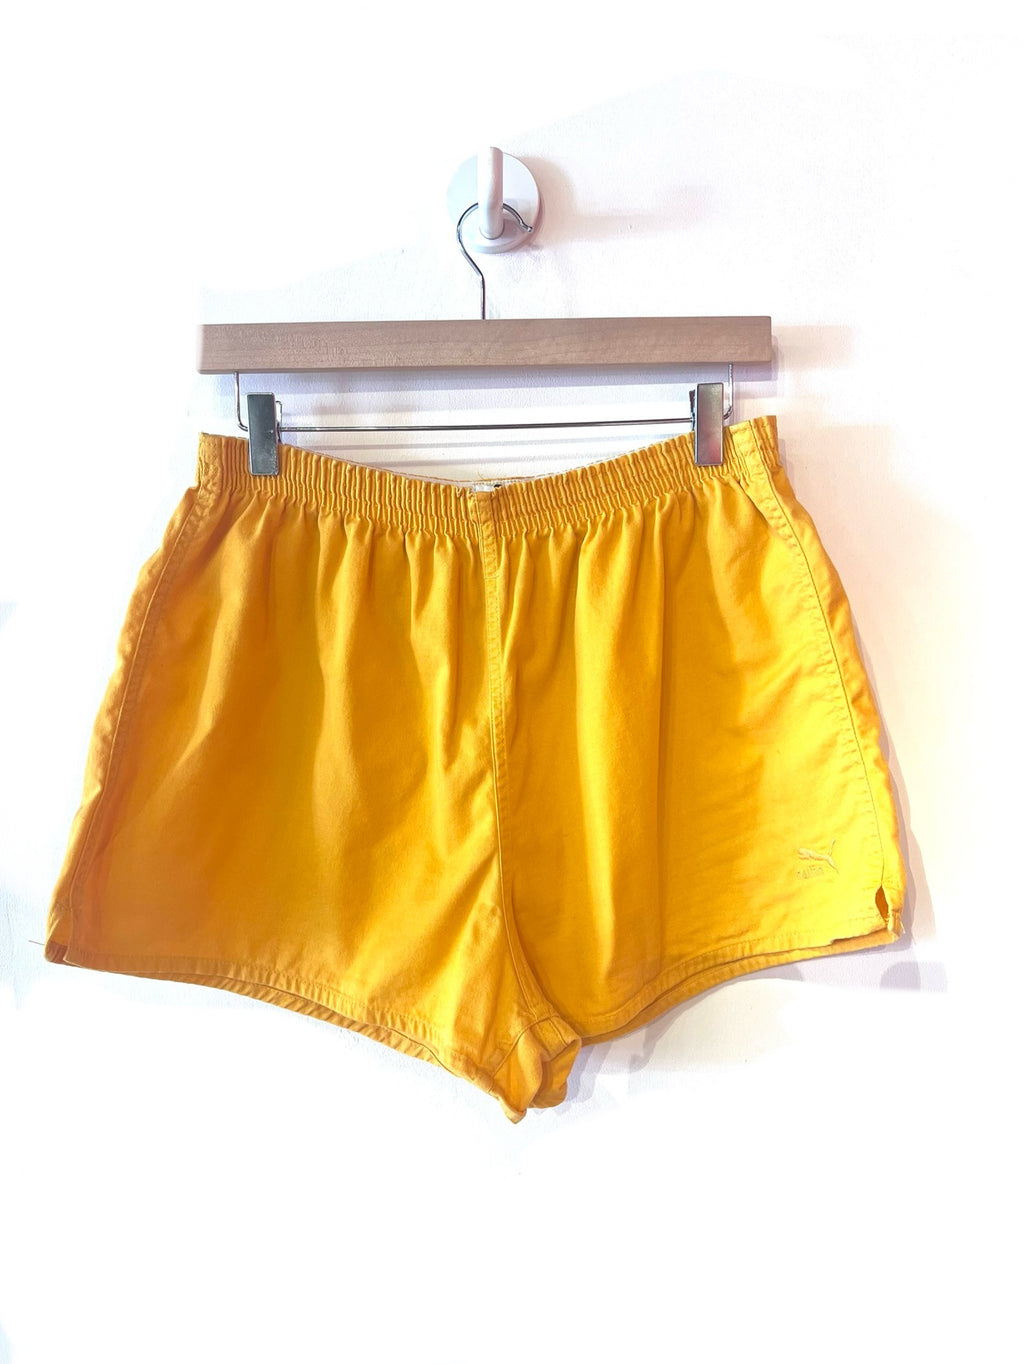 Sunshine Yellow Running Shorts by PUMA